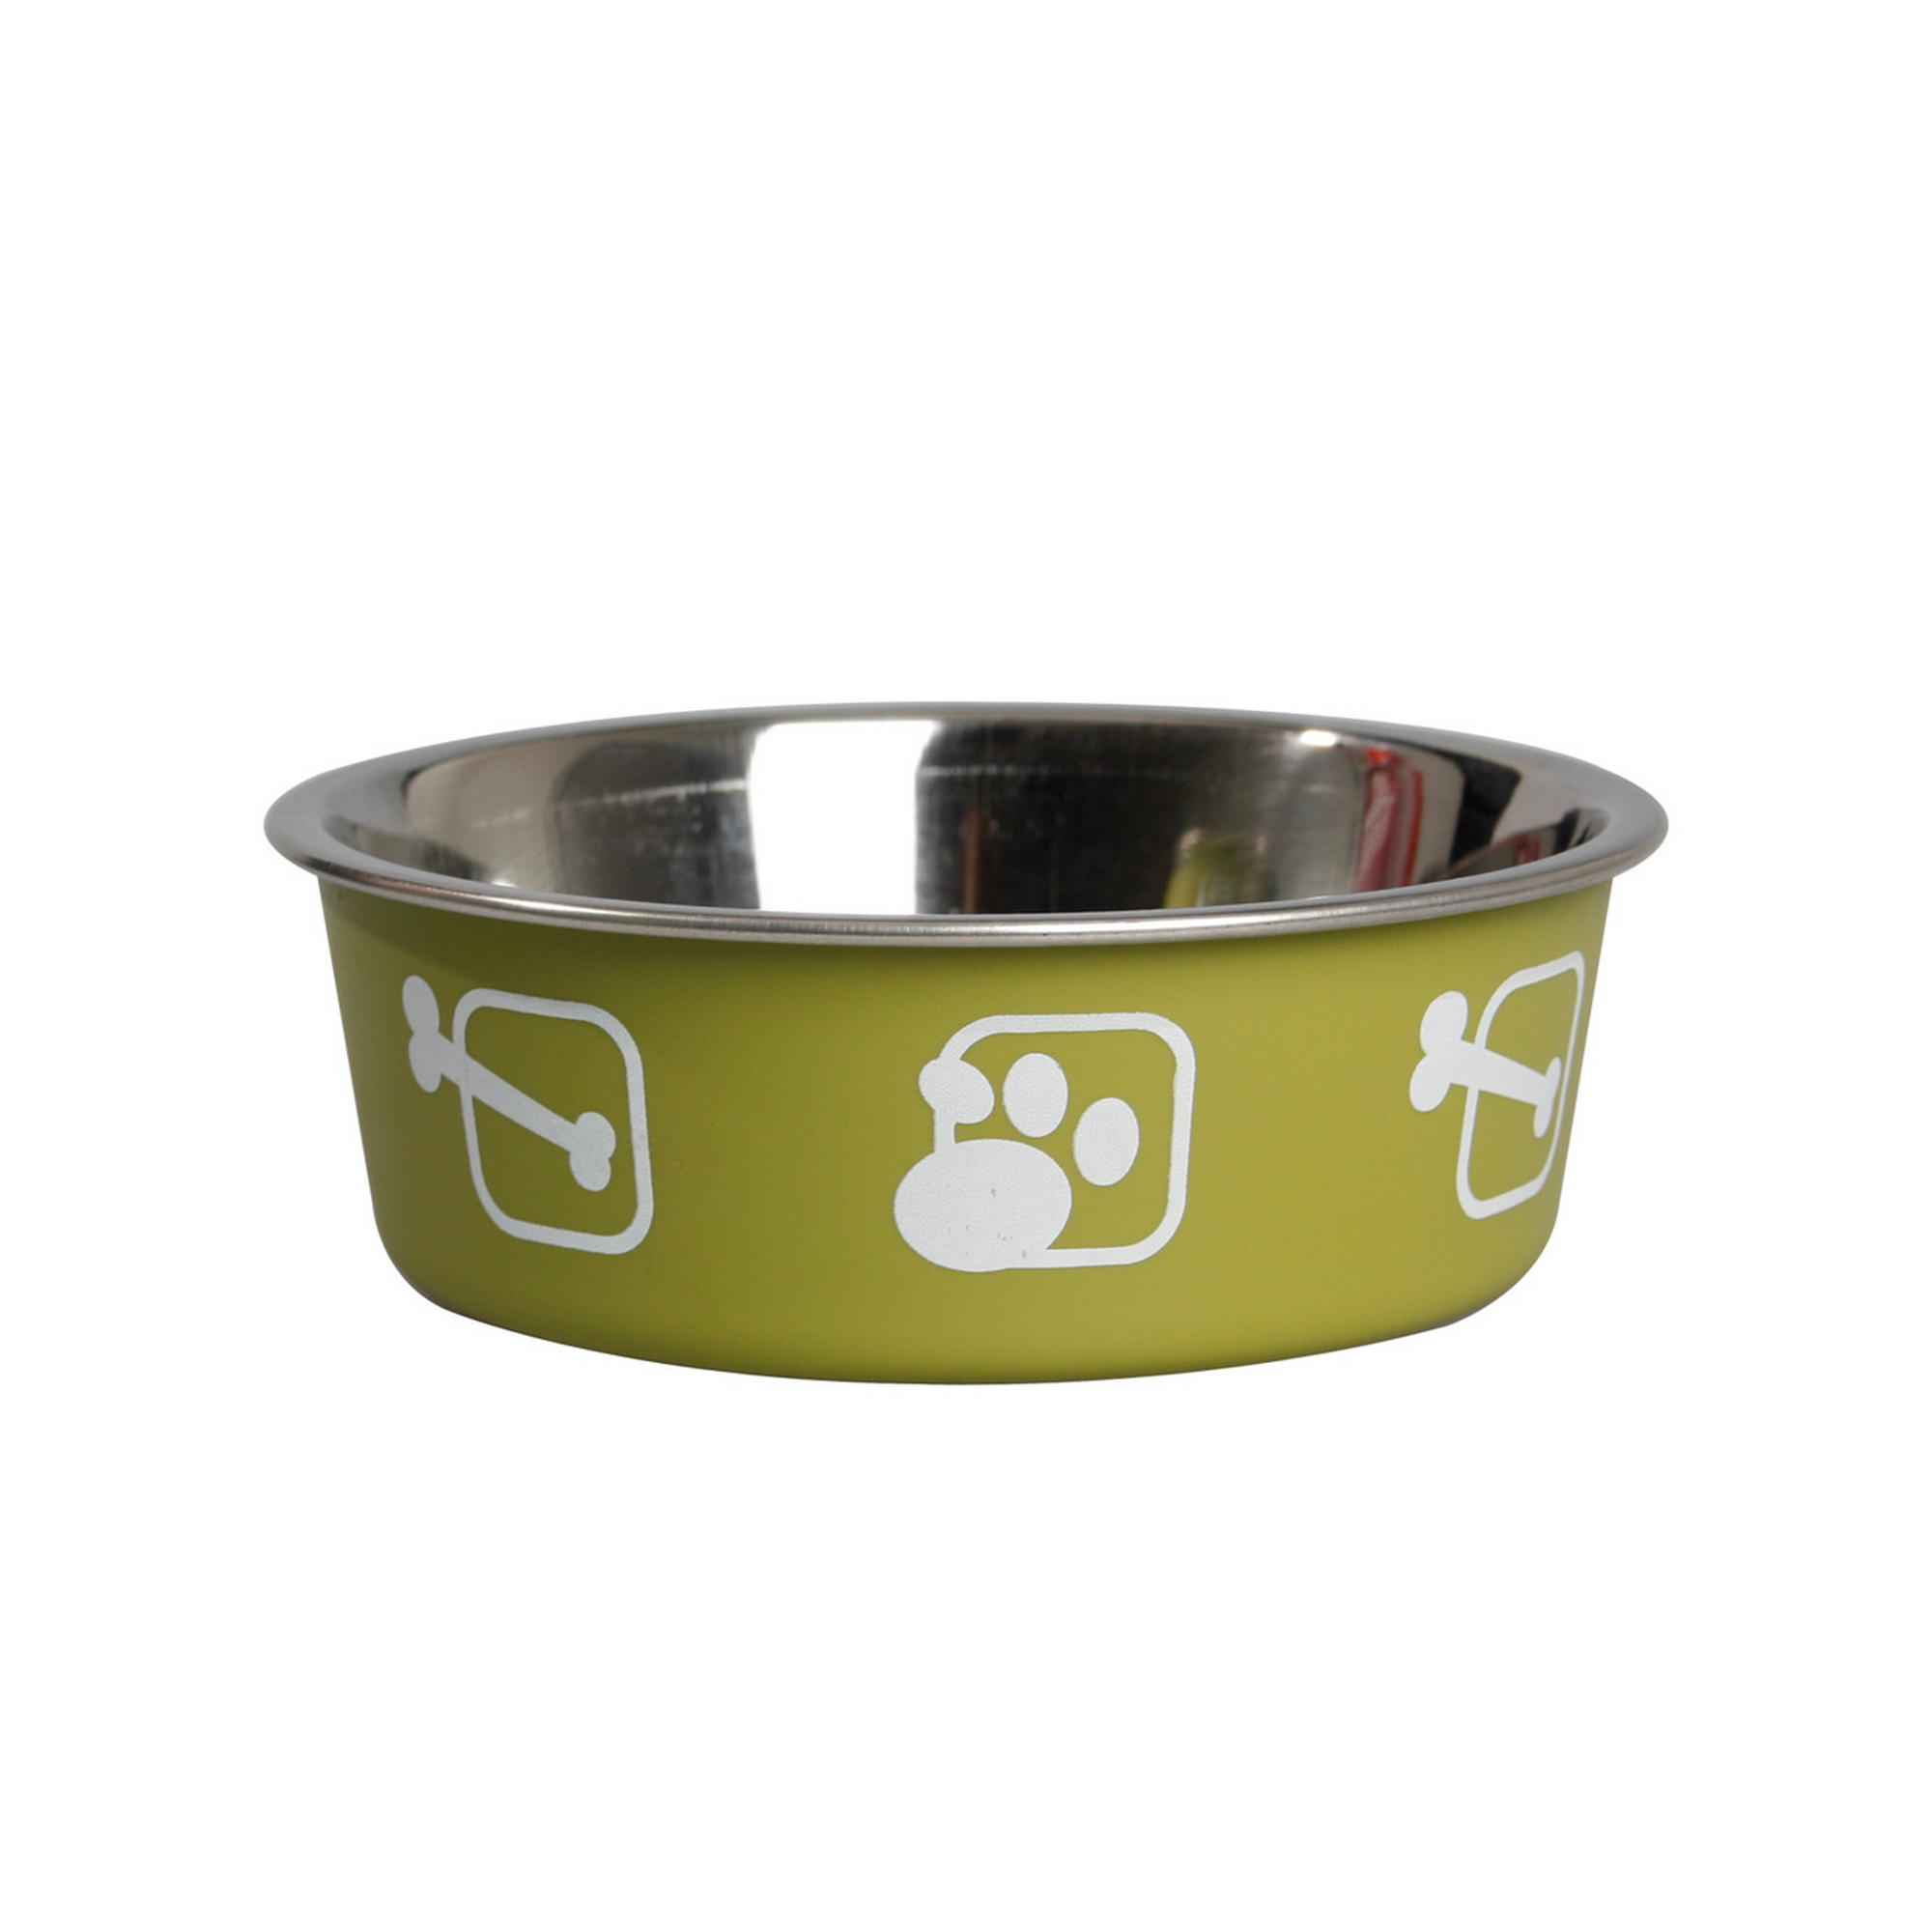 Hundenapf 'Kena' Edelstahl grün mit Knochen- und Pfotenmotiv Ø 17 cm + product picture